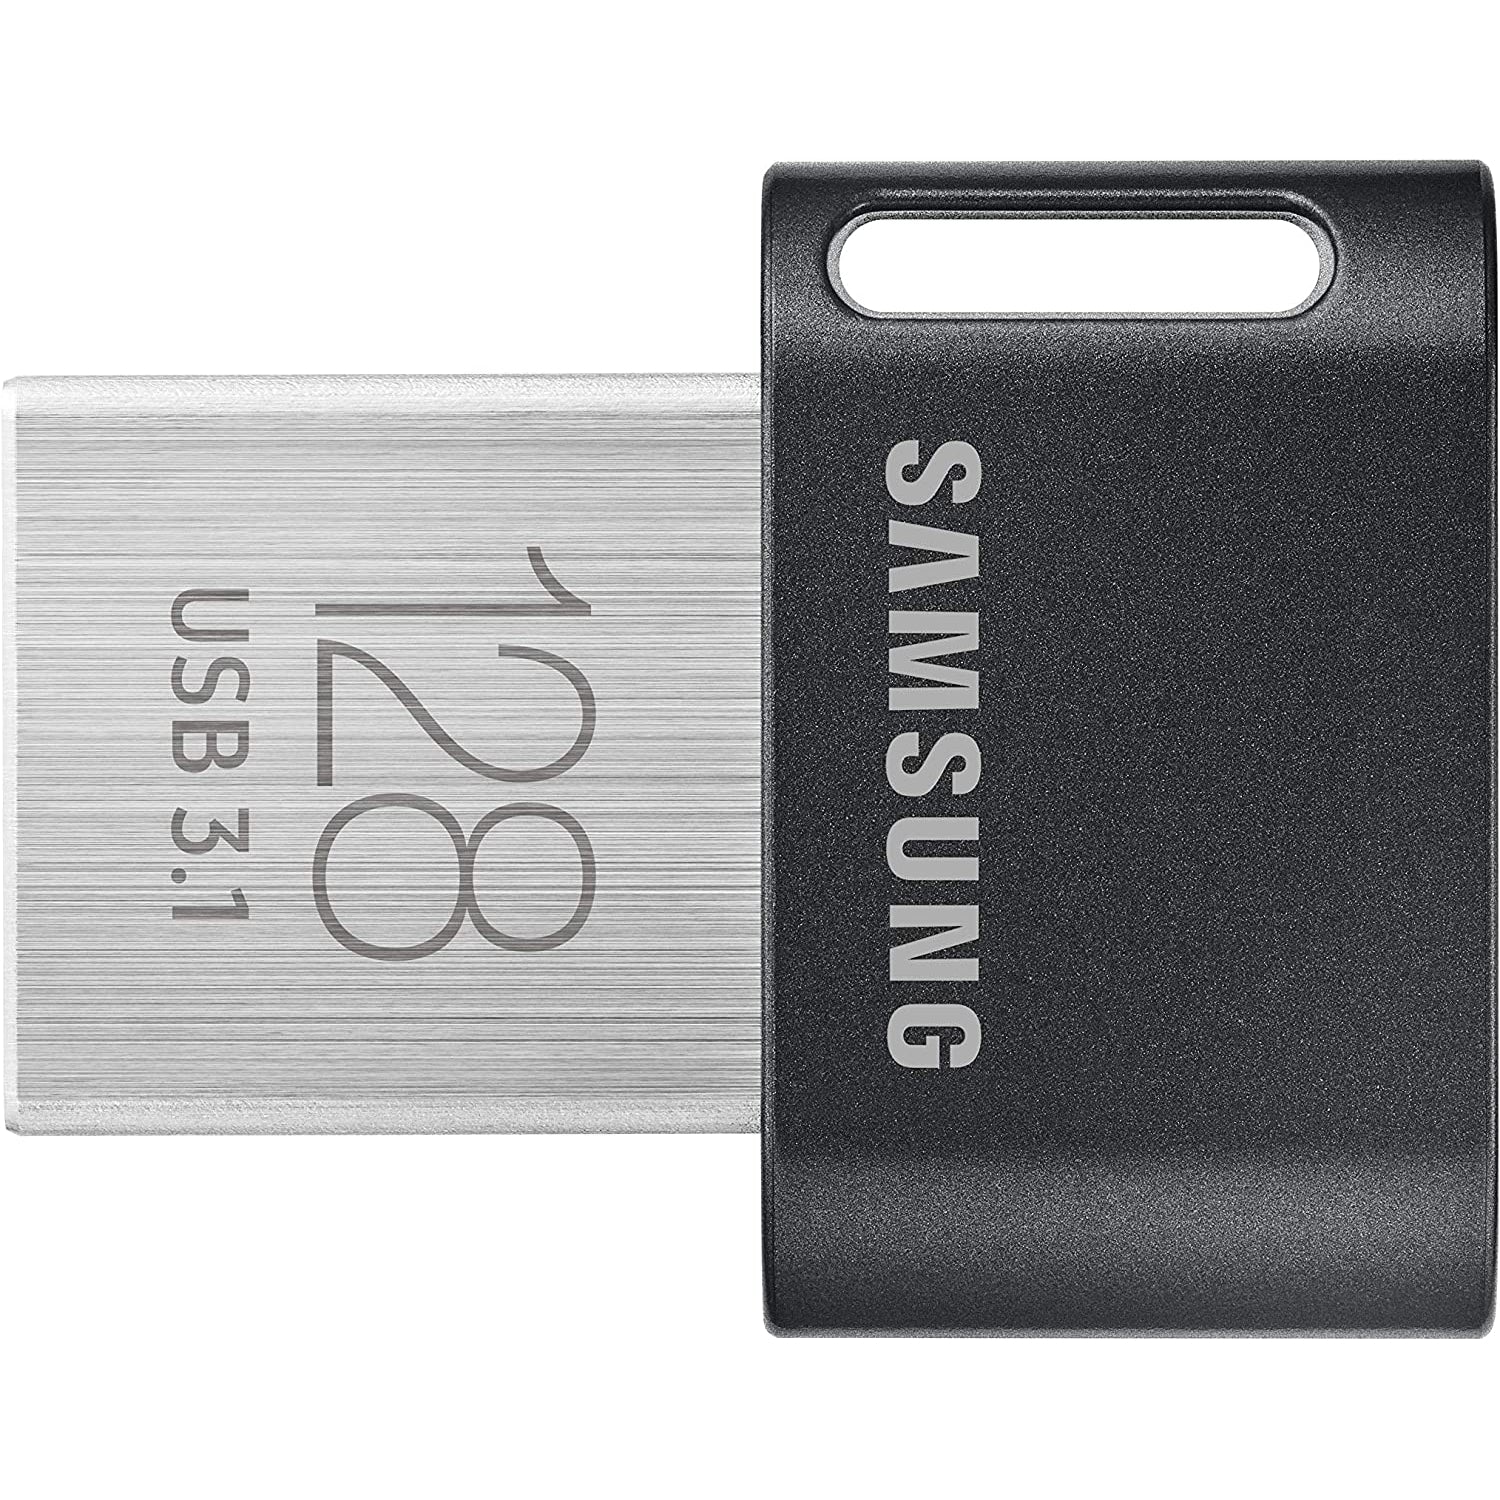 Samsung 128GB Fit Plus USB 3.1 - Black